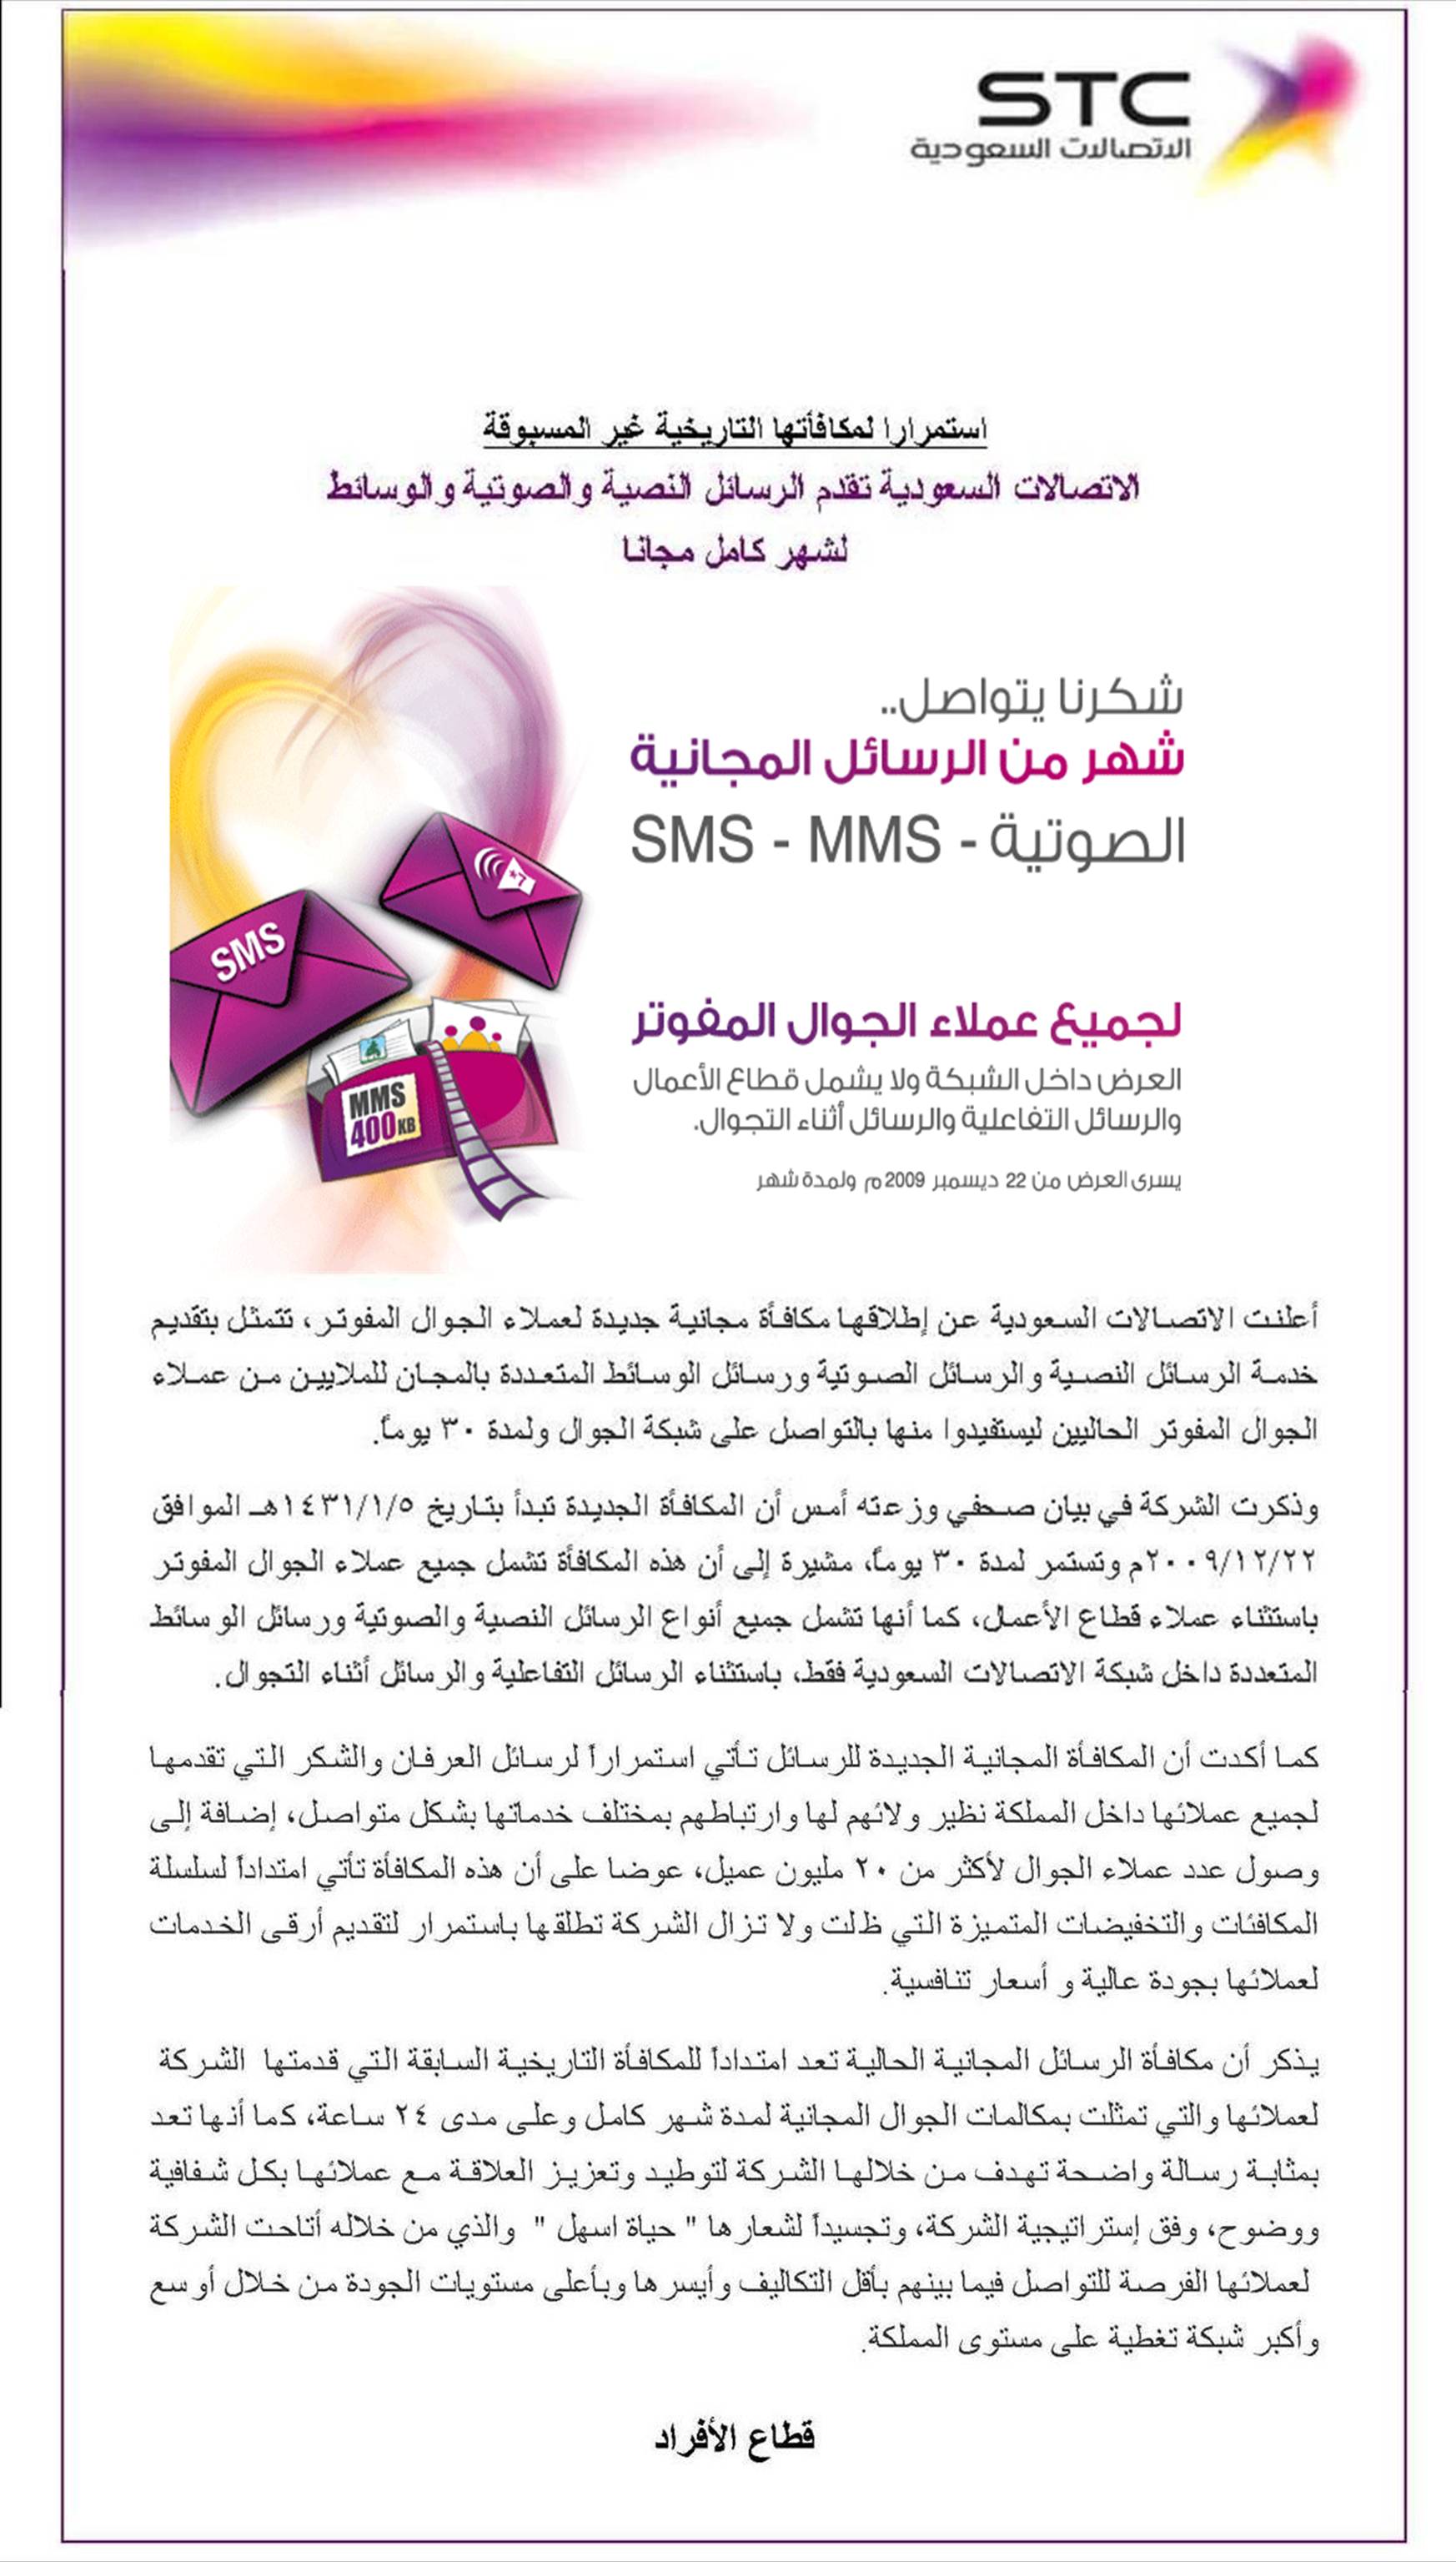 رسائل الوسائط MMS والرسائل النصية SMS مجانا لمدة شهر ابتداء من اليوم